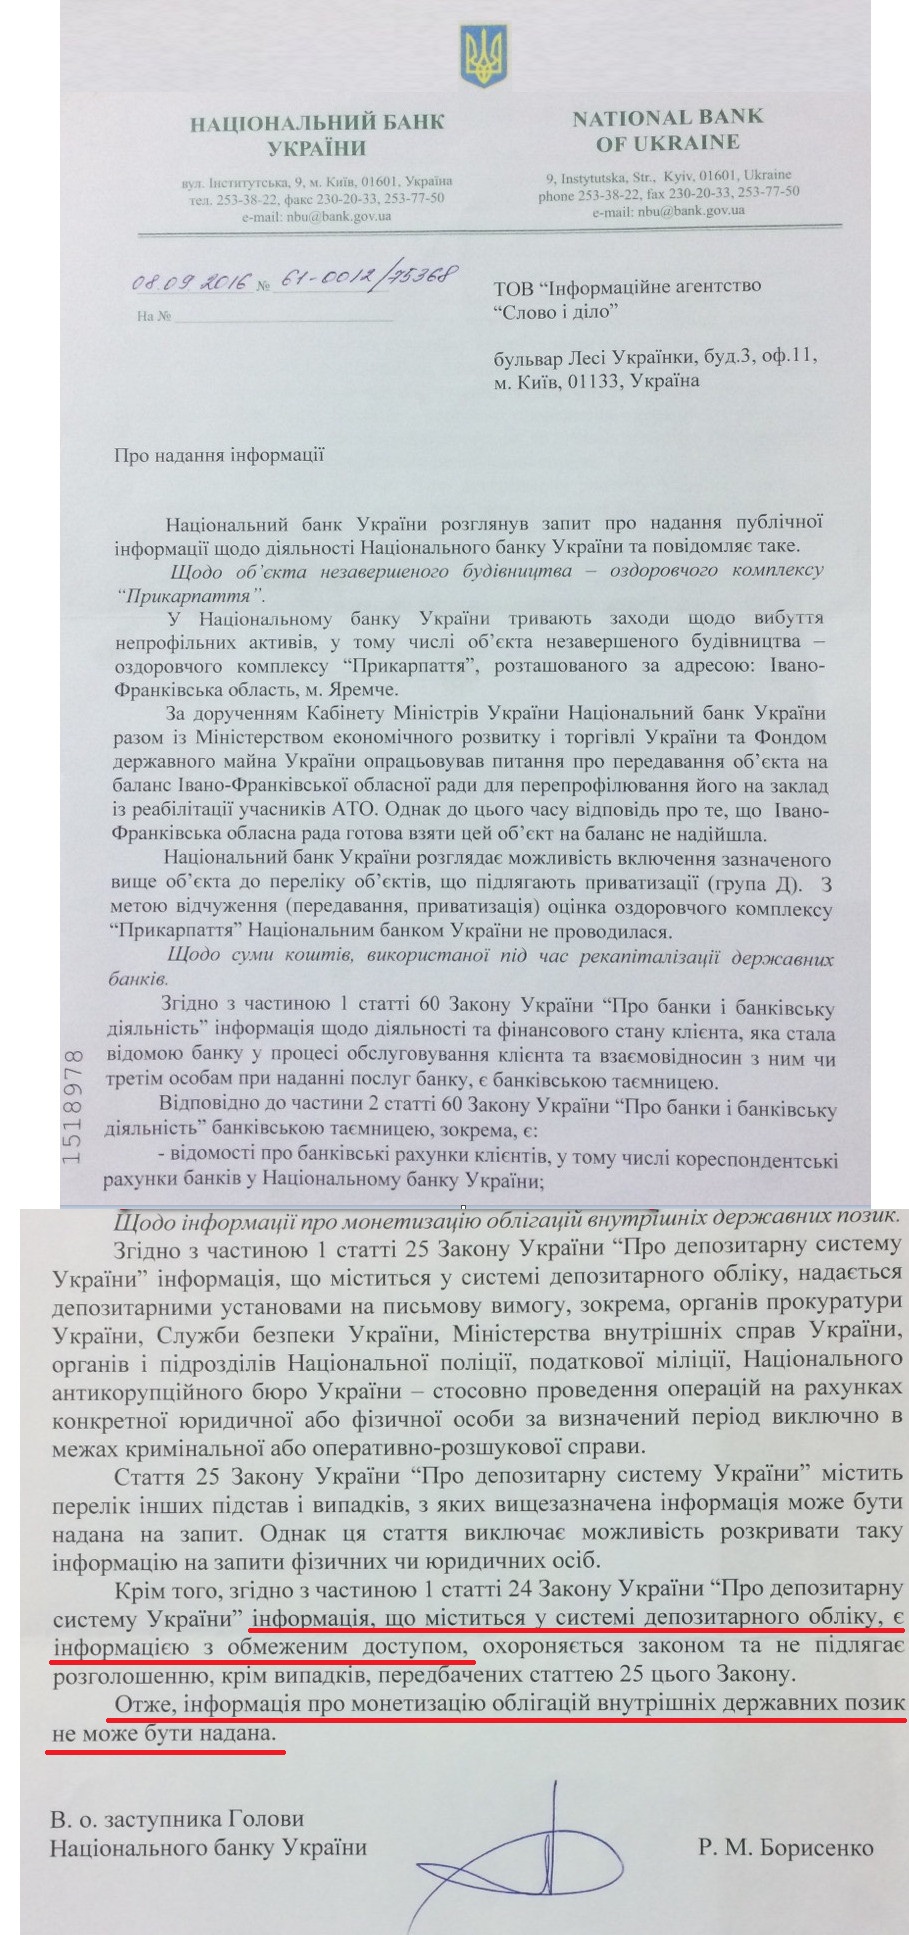 Лист в.о. заступника голови Національного банку України від 8 вересня 2016 року